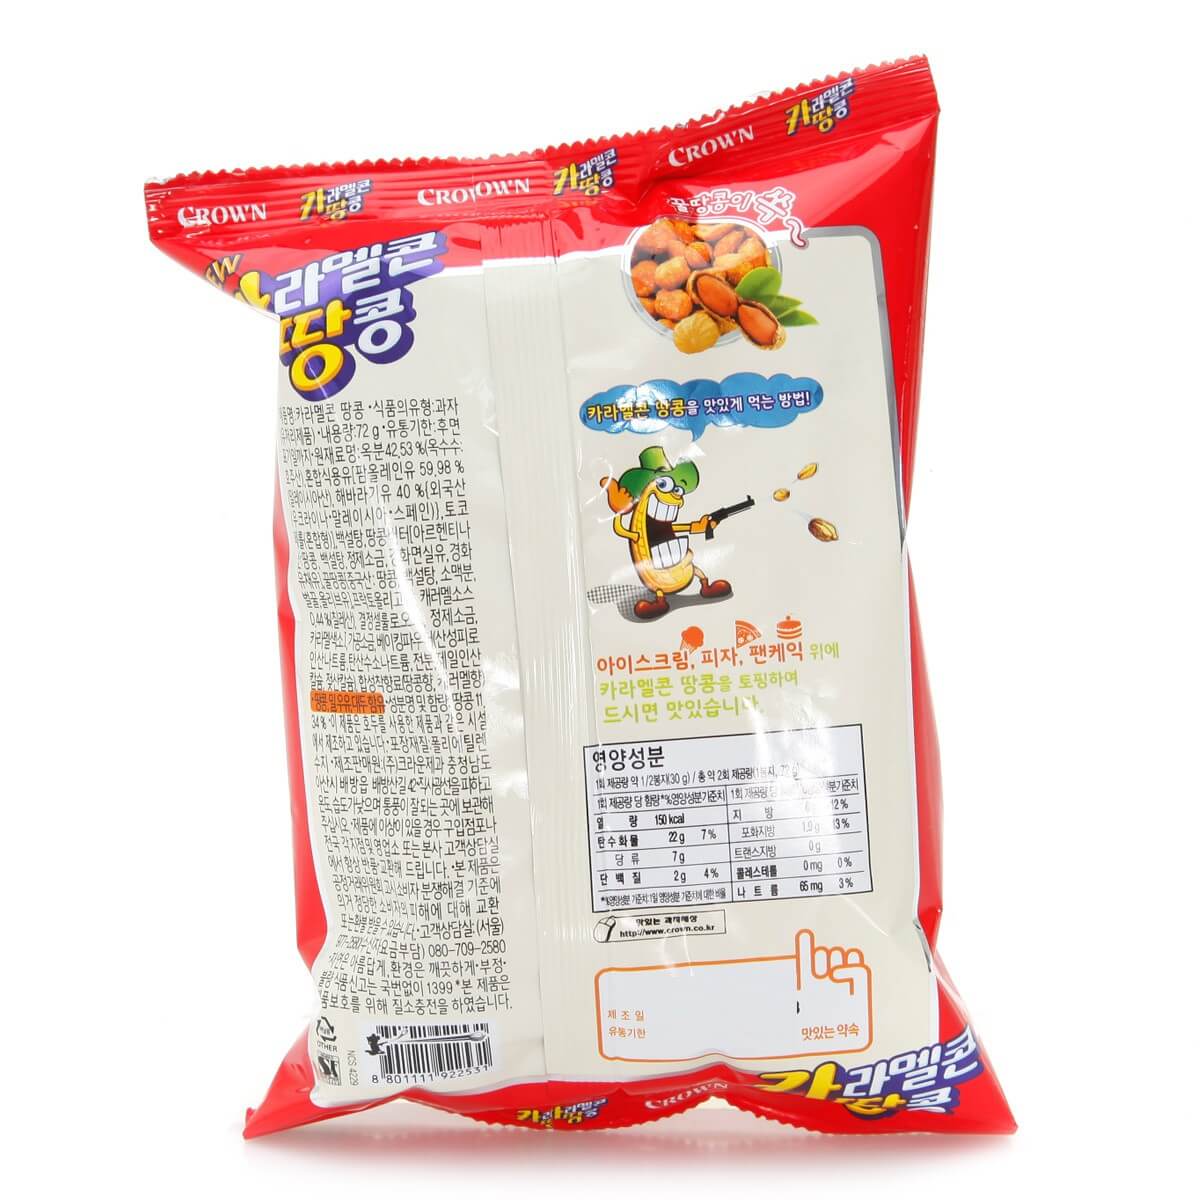 韓國食品-(Expiry Date:4/6/2024)[Crown] Caramel Corn Peanut 72g